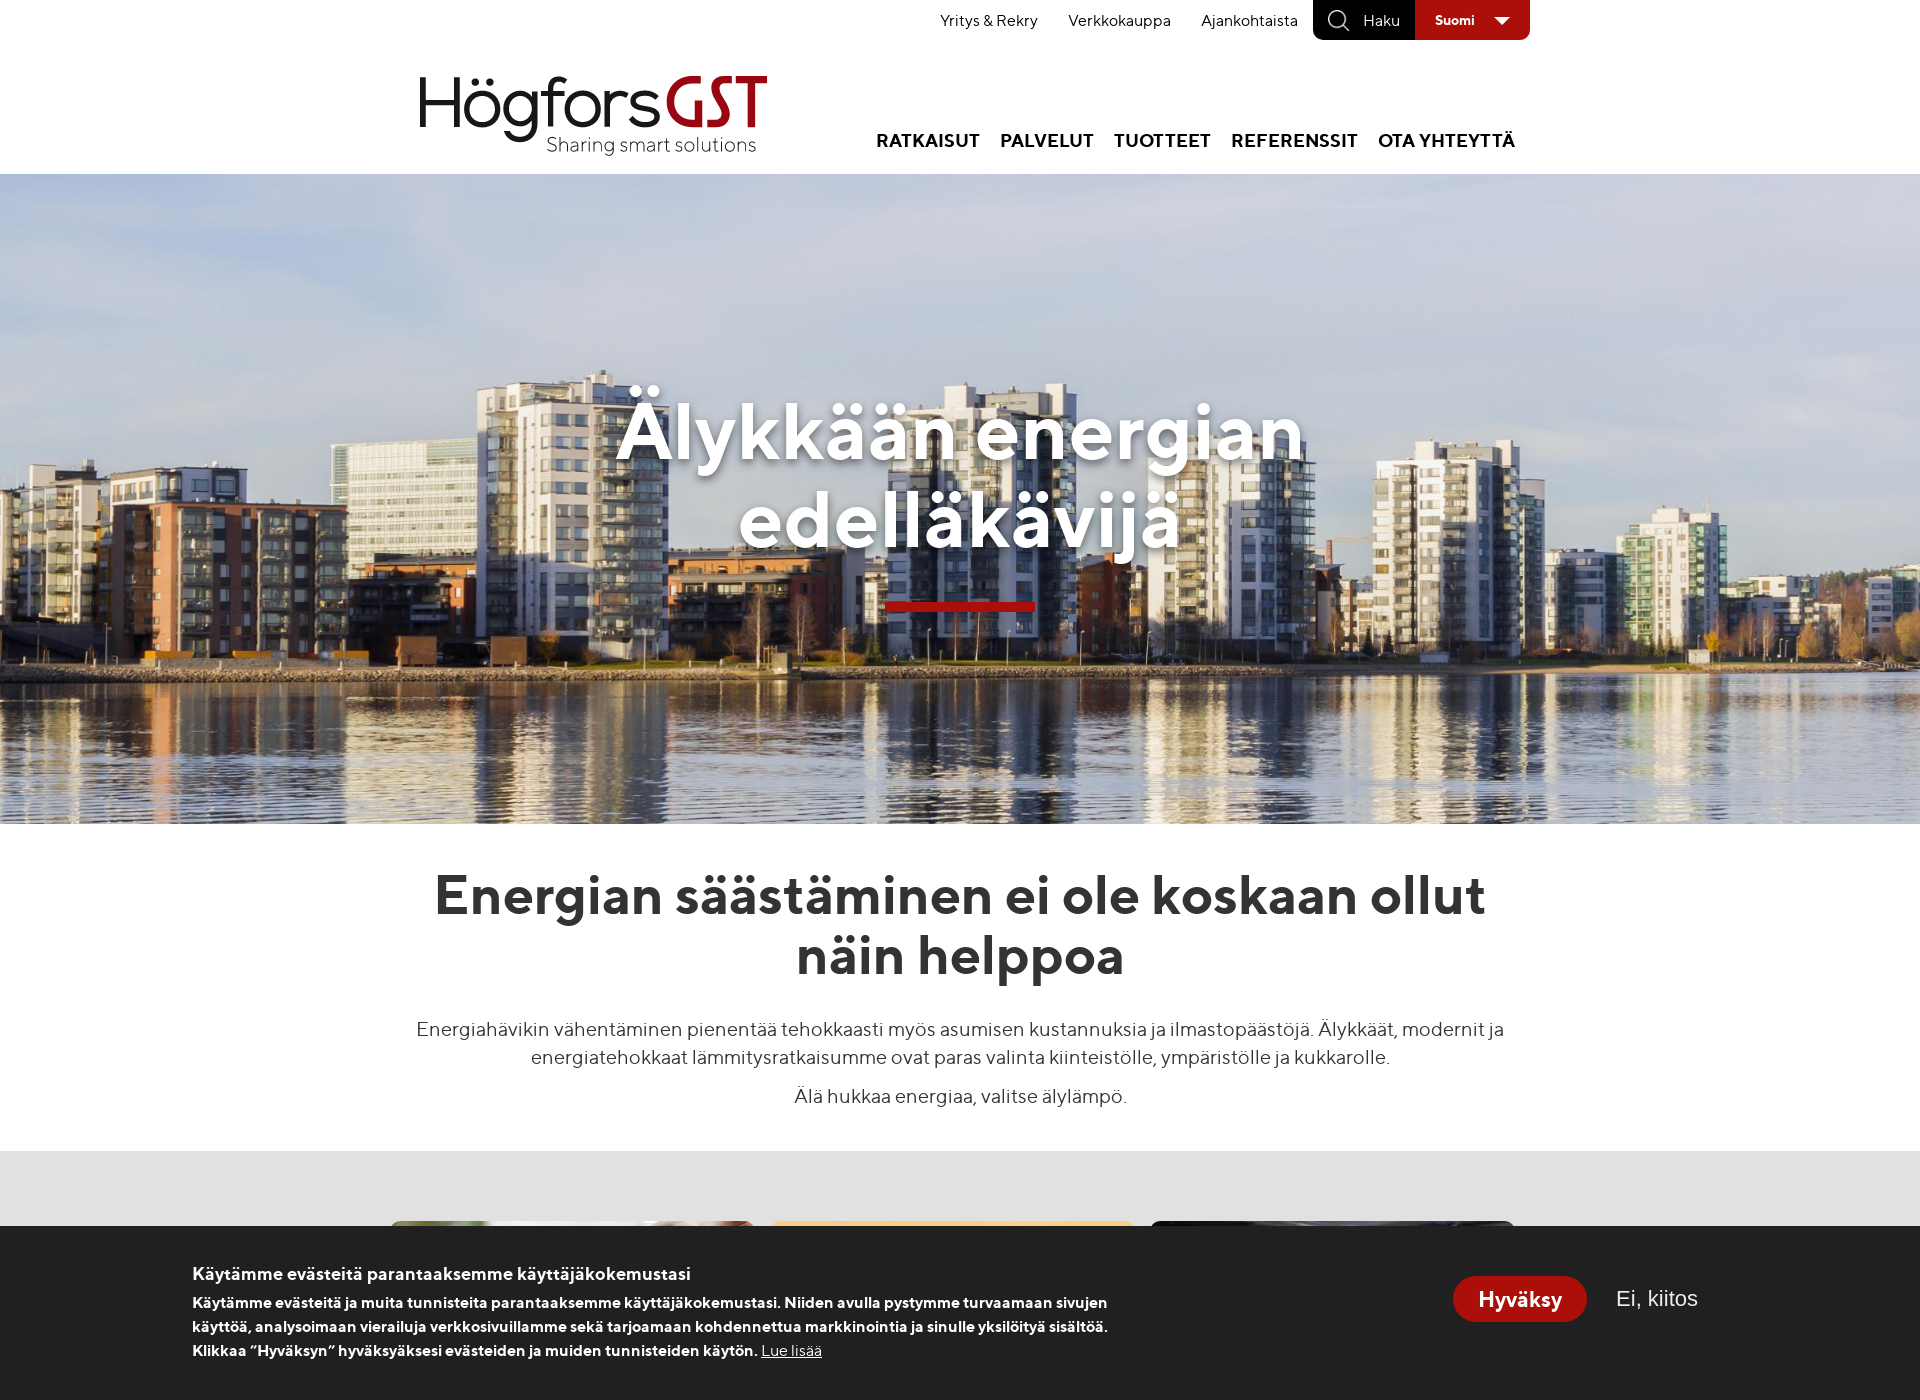 Näyttökuva hogforsgst.fi